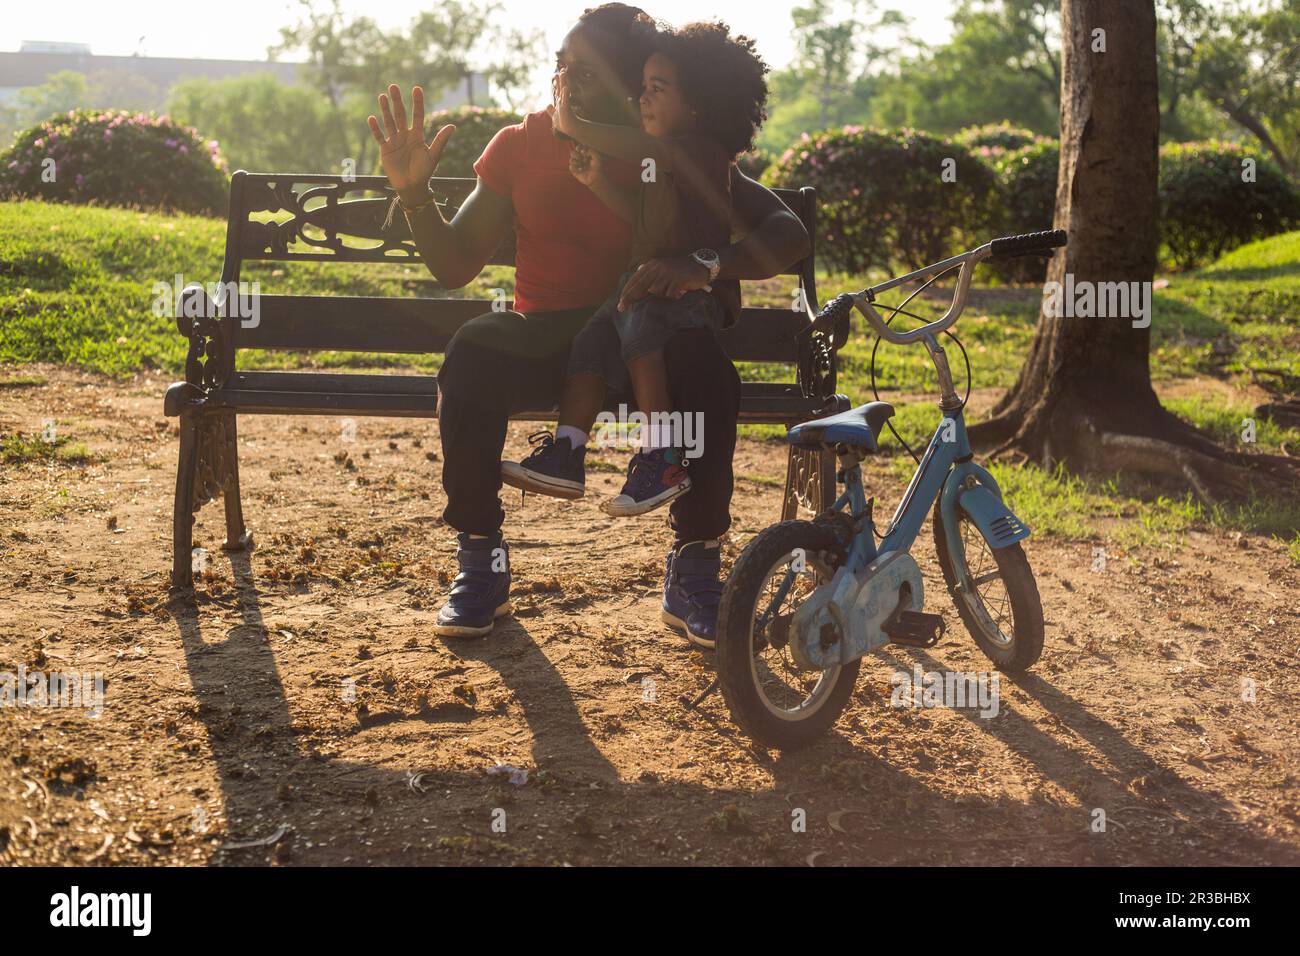 Vater und Sohn winken mit dem Fahrrad, sitzen auf einer Bank im Park Stockfoto